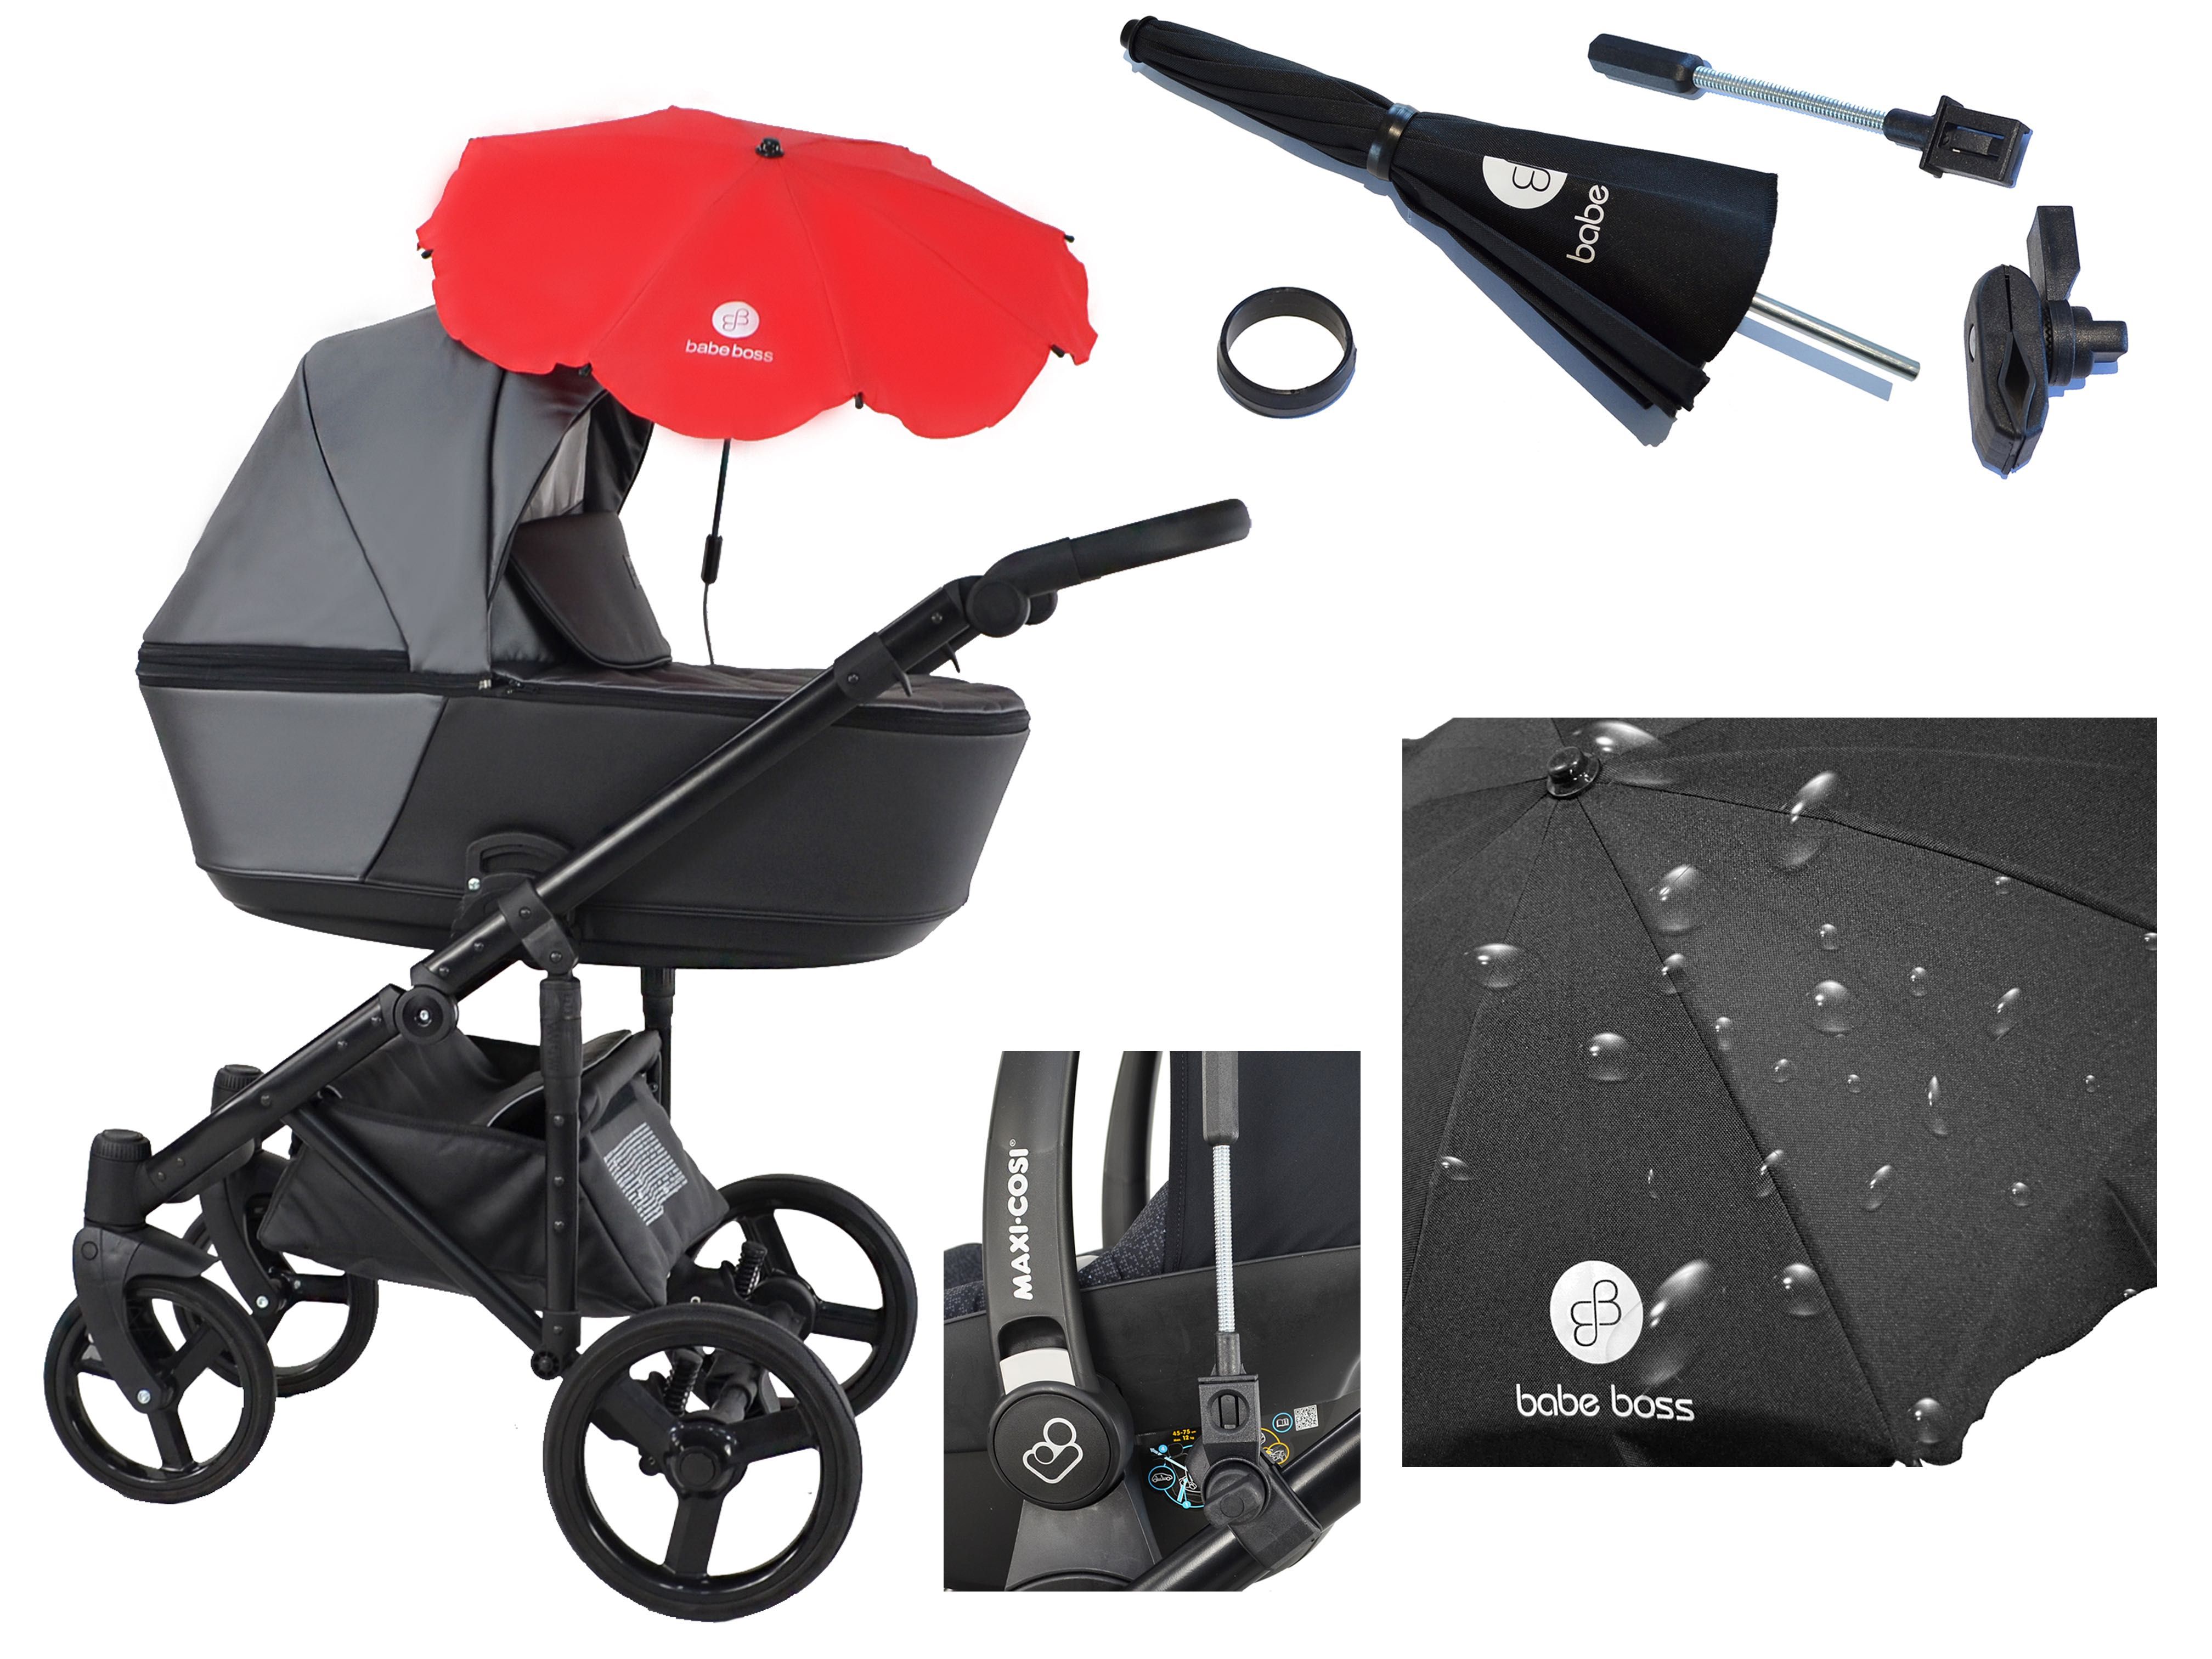 NOWA Uniwersalna Parasolka do wózków dziecięcych z filtrem UV